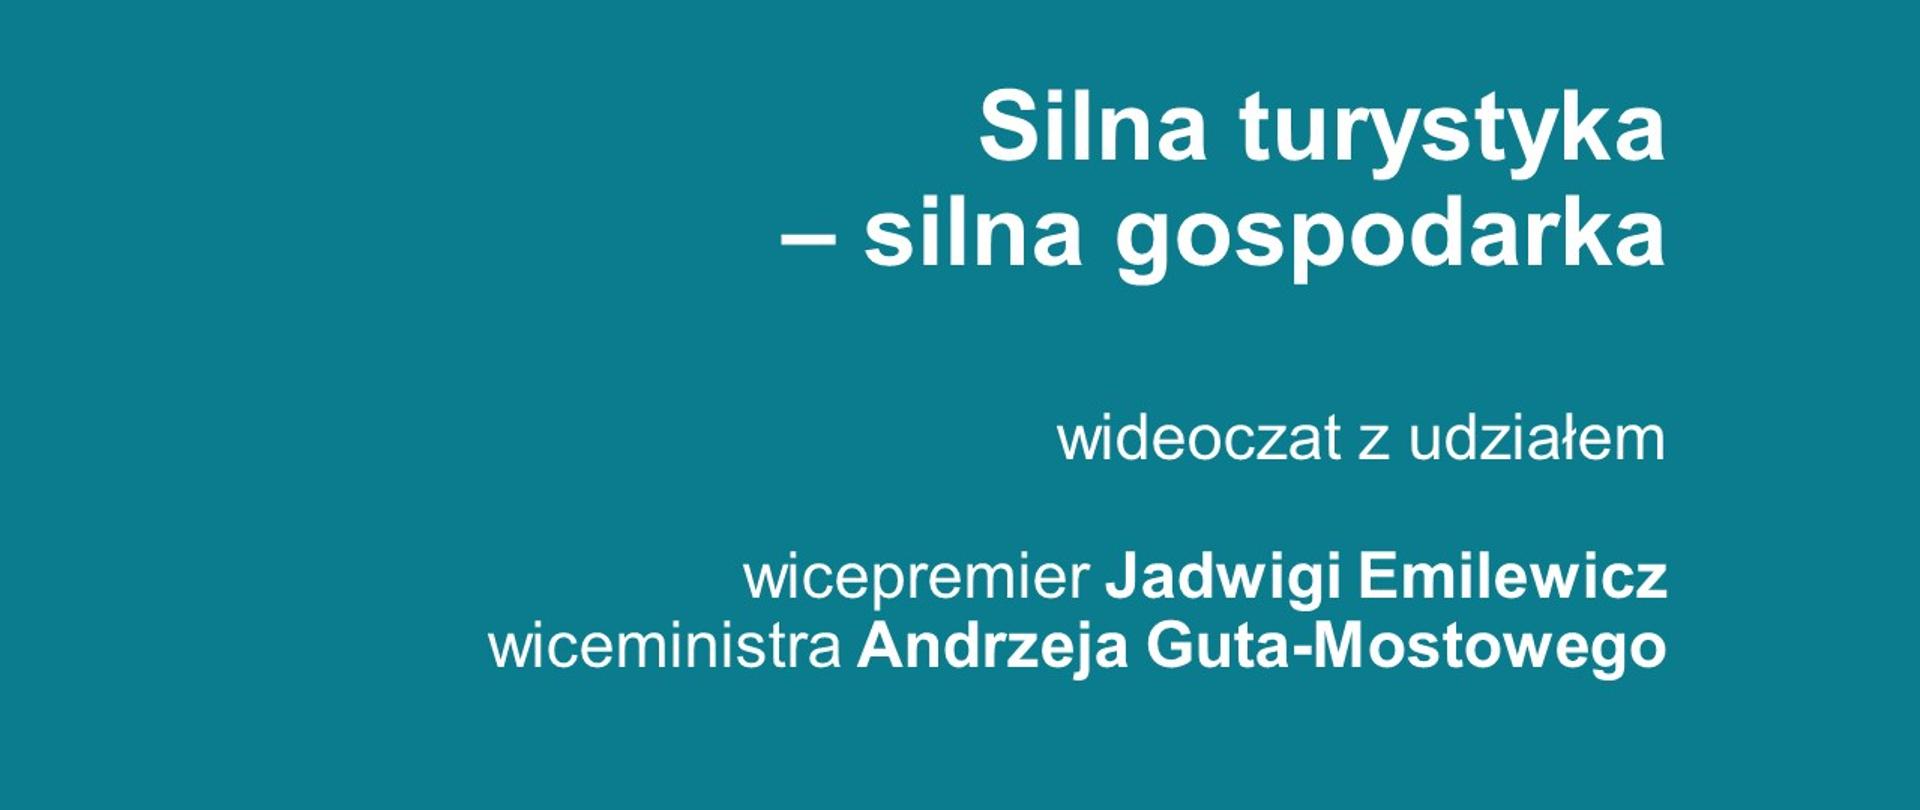 Baner informujący o wideoczacie "Silna turystyka - silna gospodarka" z udziałem wicepremier Jadwigi Emilewicz oraz wiceministra Andrzeja Guta-Mostowego